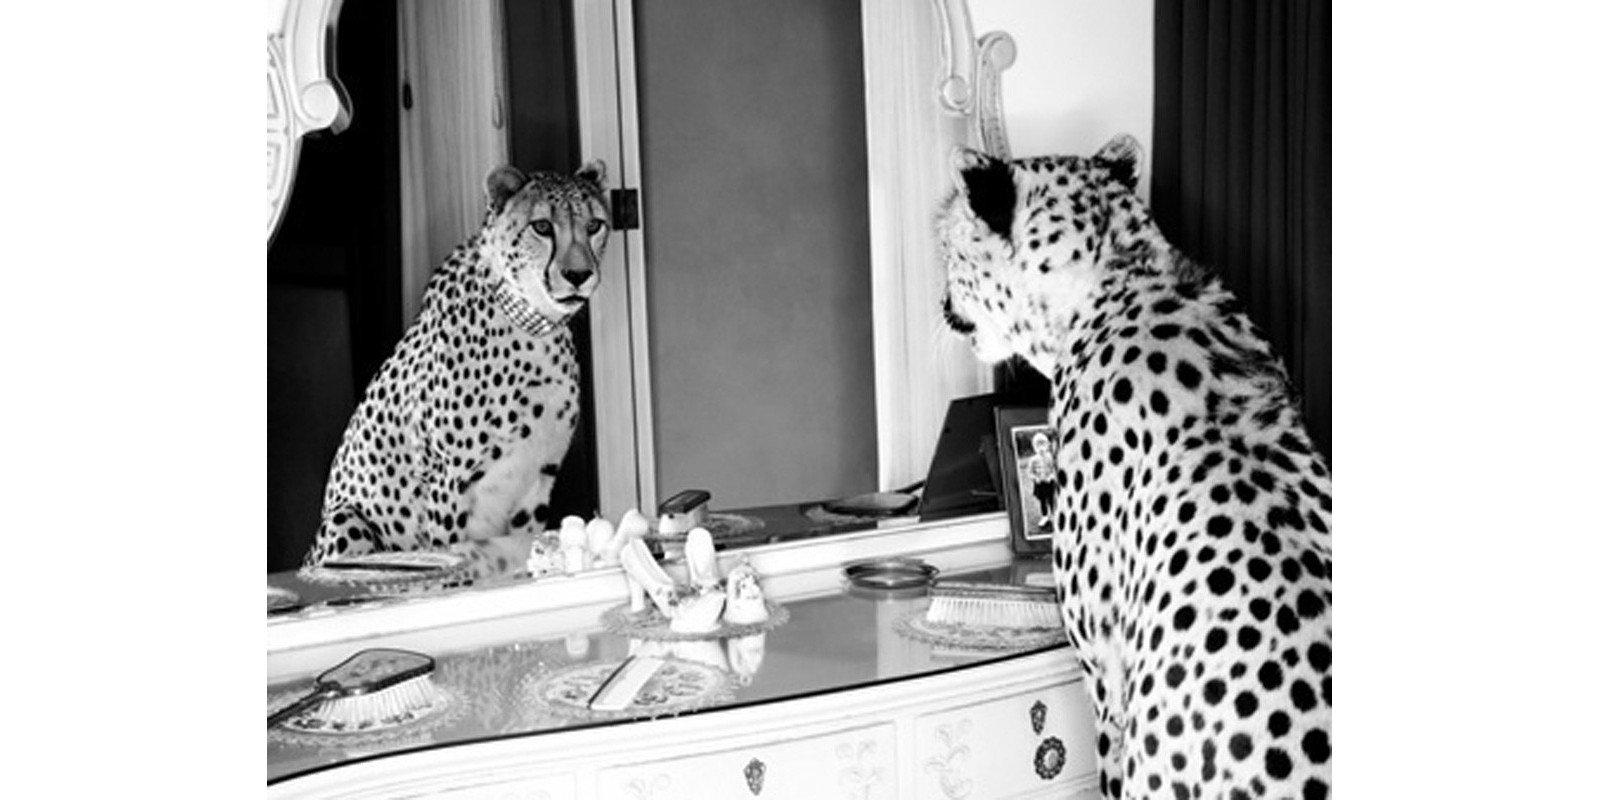 Emma Rian - Cheetah looking in mirror